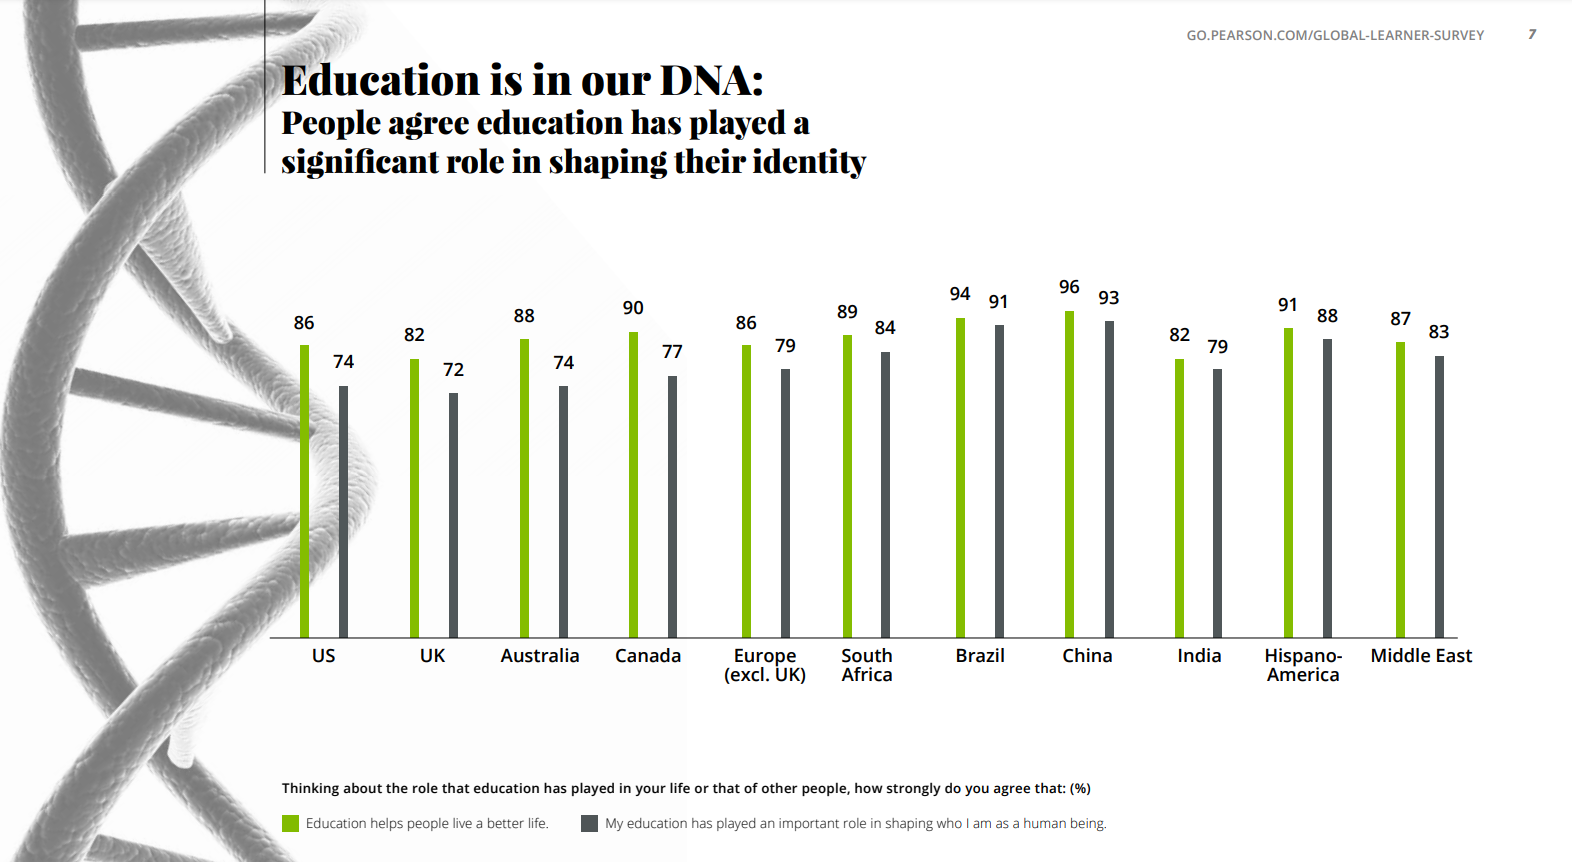 Gráfico intitulado "Education is in our DNA" ou "Educação está em nosso DNA", da Pearson Global Learner Survey.